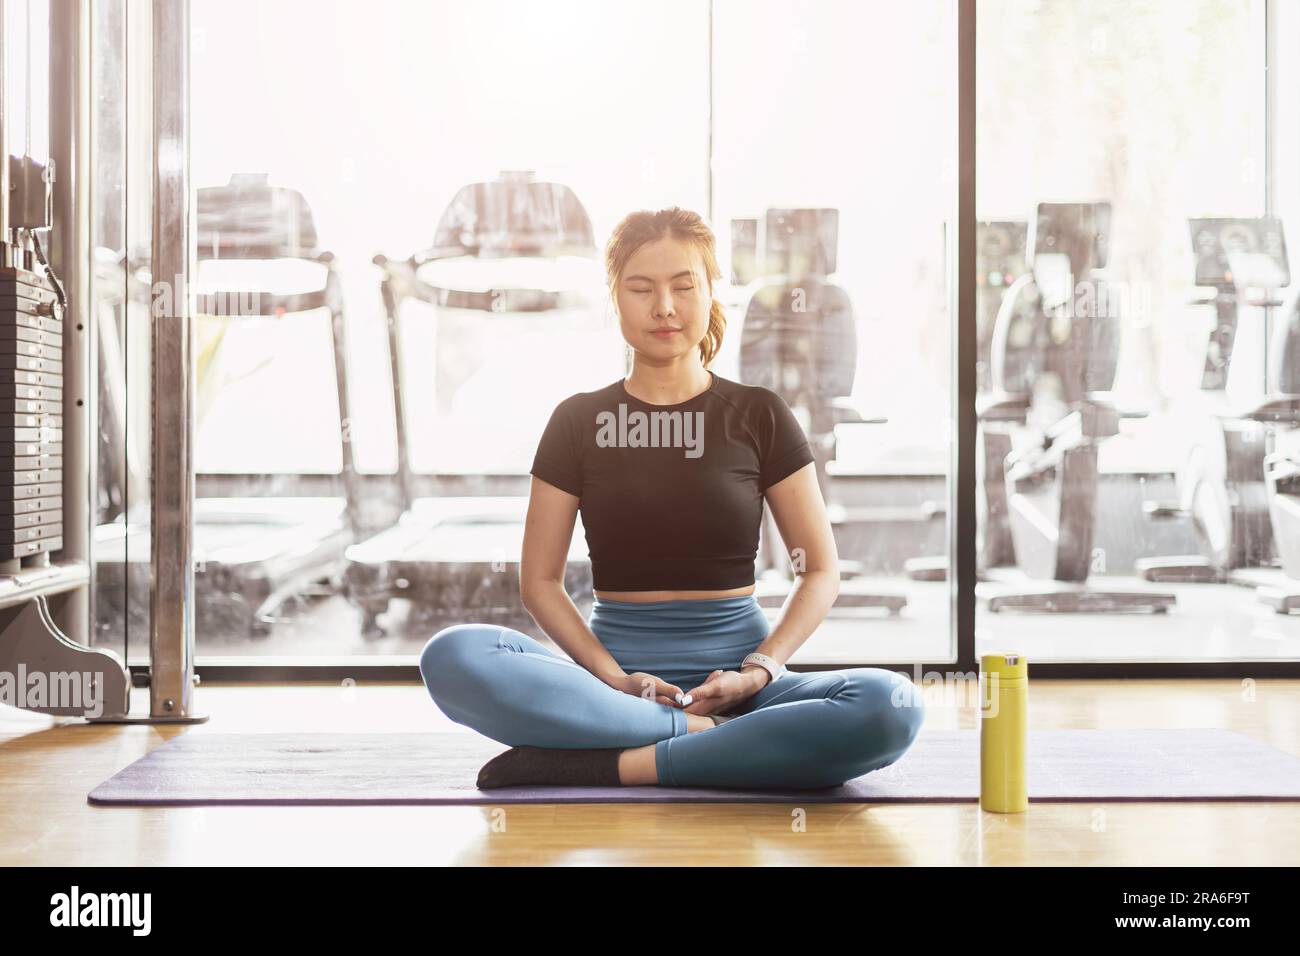 Mujer asiática joven que practica el yoga que se sienta en ejercicio de la meditación, descansa la pose tranquila del relax que trabaja hacia fuera usando ropa deportiva, deporte interior de la sesión de la meditación Foto de stock